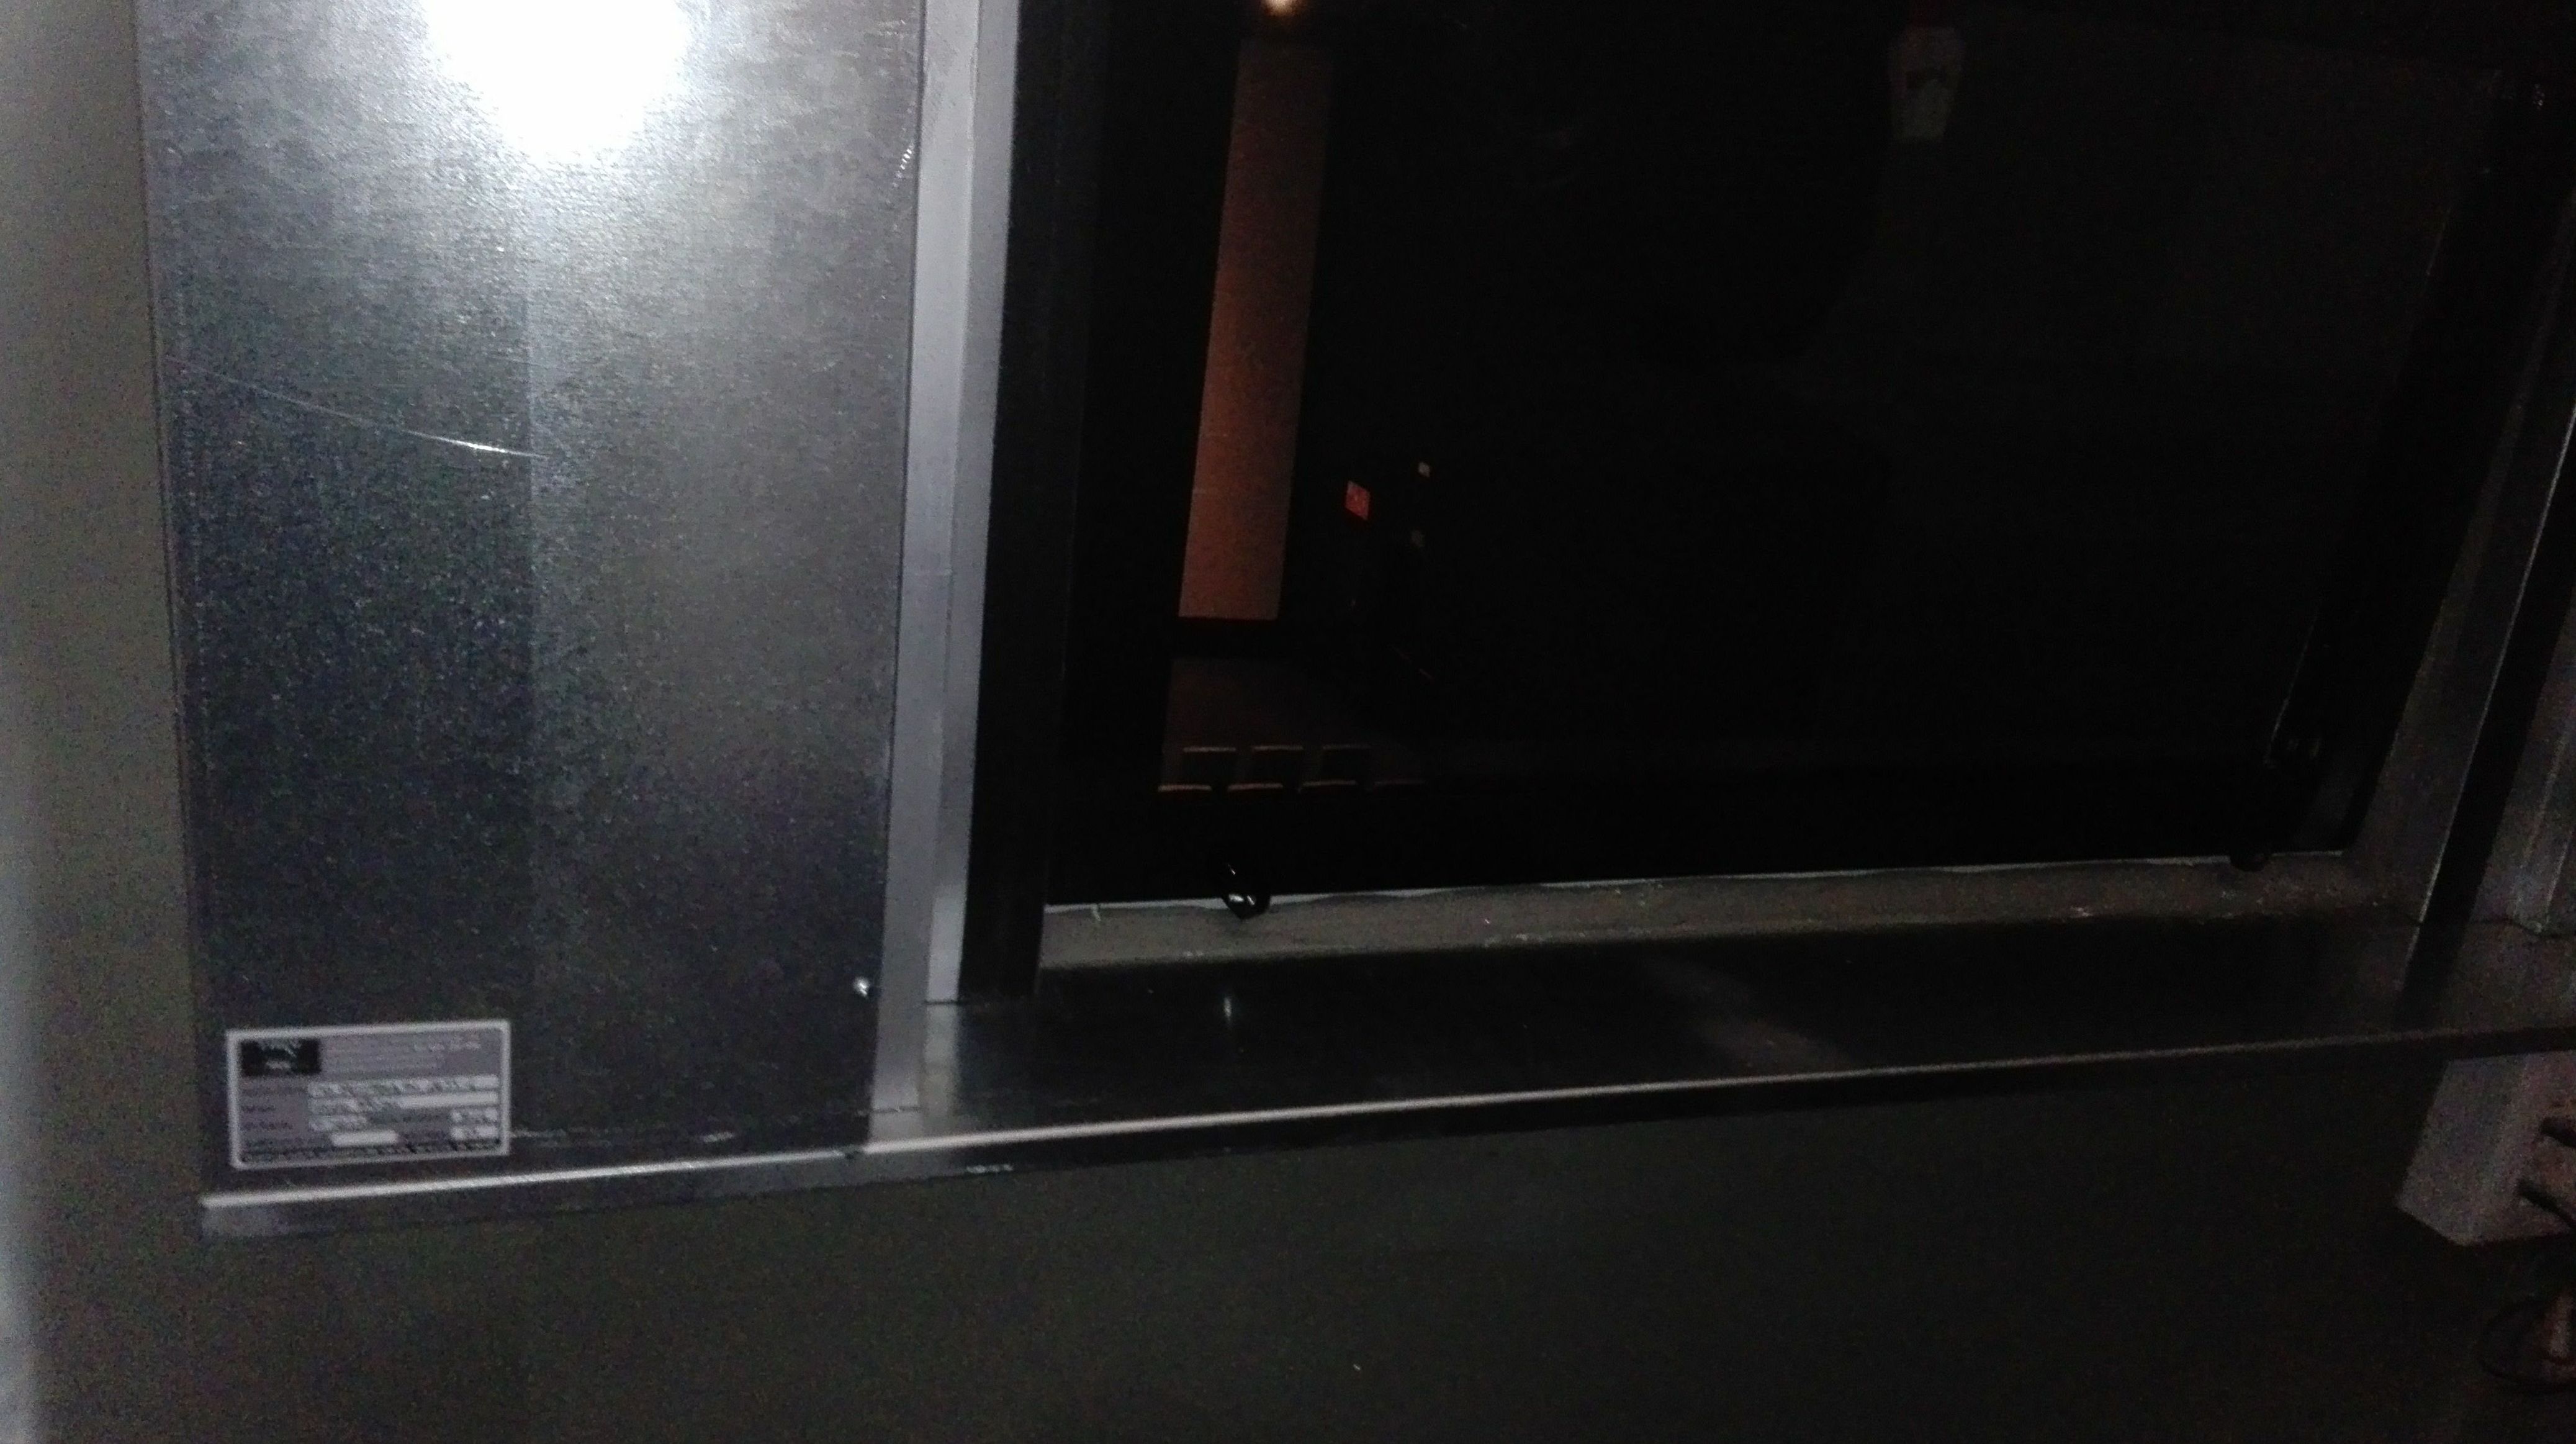 Puerta guillotina en Ventana cortafuegos sala de cine, bandeja de cierre